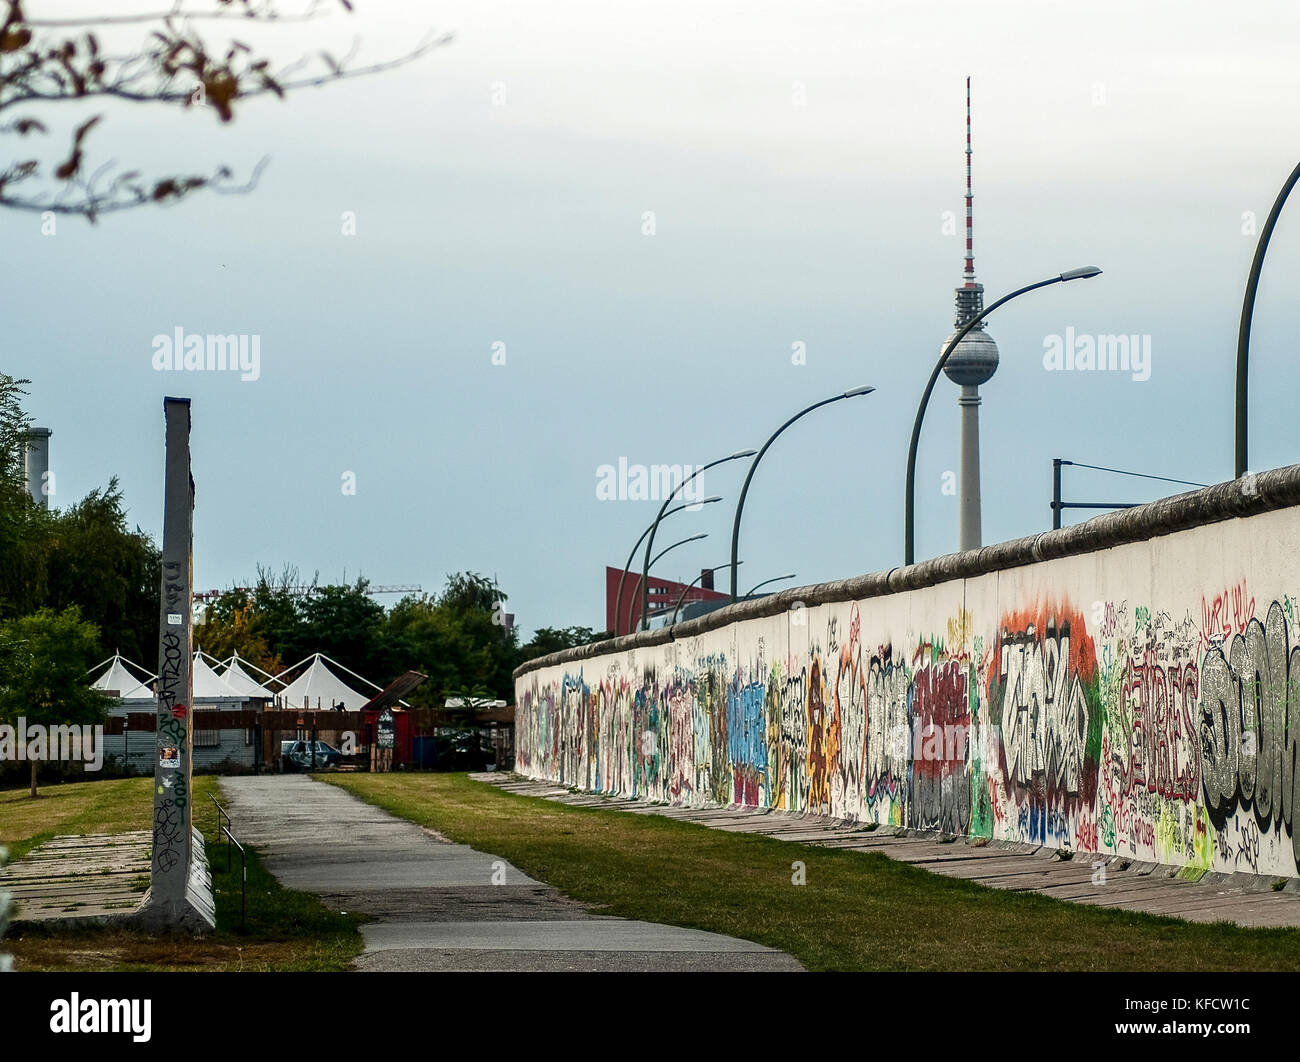 BERLIN-SEPTEMBRE 26 : le mur de Berlin à la galerie East Side, Berlin, Allemagne, sur 26 septembre, 2012. Banque D'Images